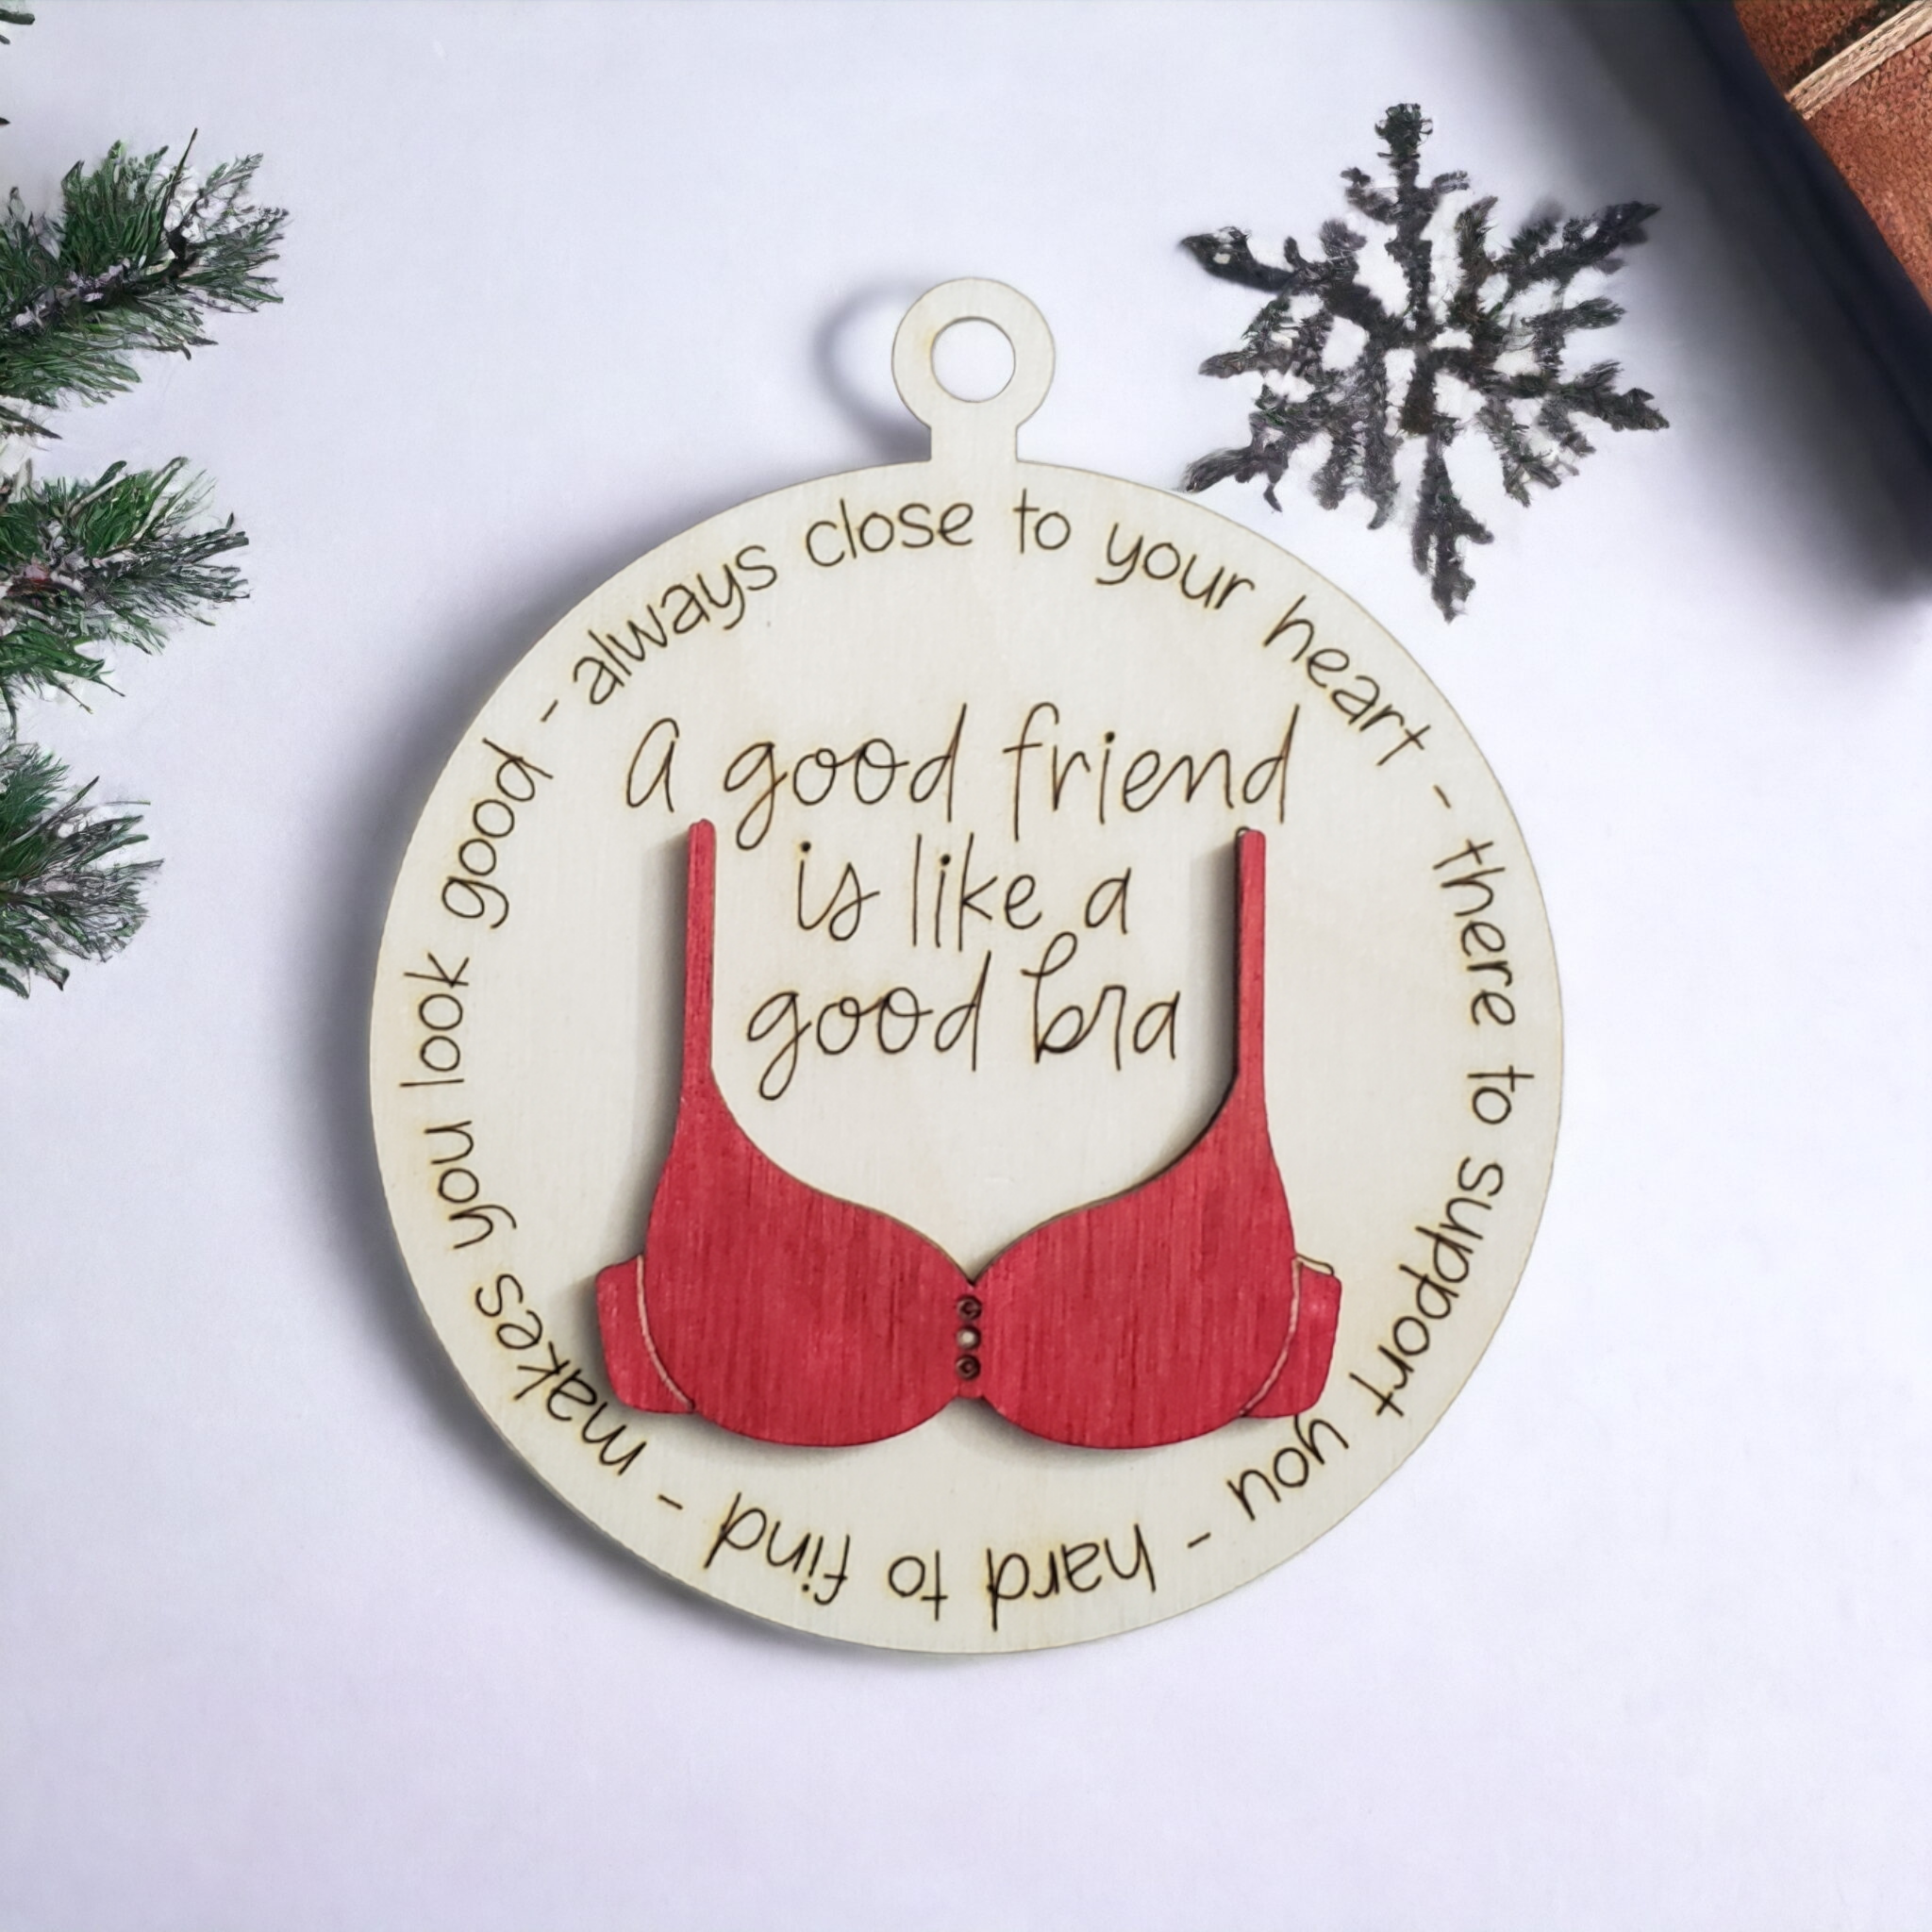 2 A Good Friend is Like A Good Bra Ornament, Funny Friend Bra Ornament,  Christmas Tree Bra Pendant, Friendship Christmas Tree Ornaments, Besties  Gifts